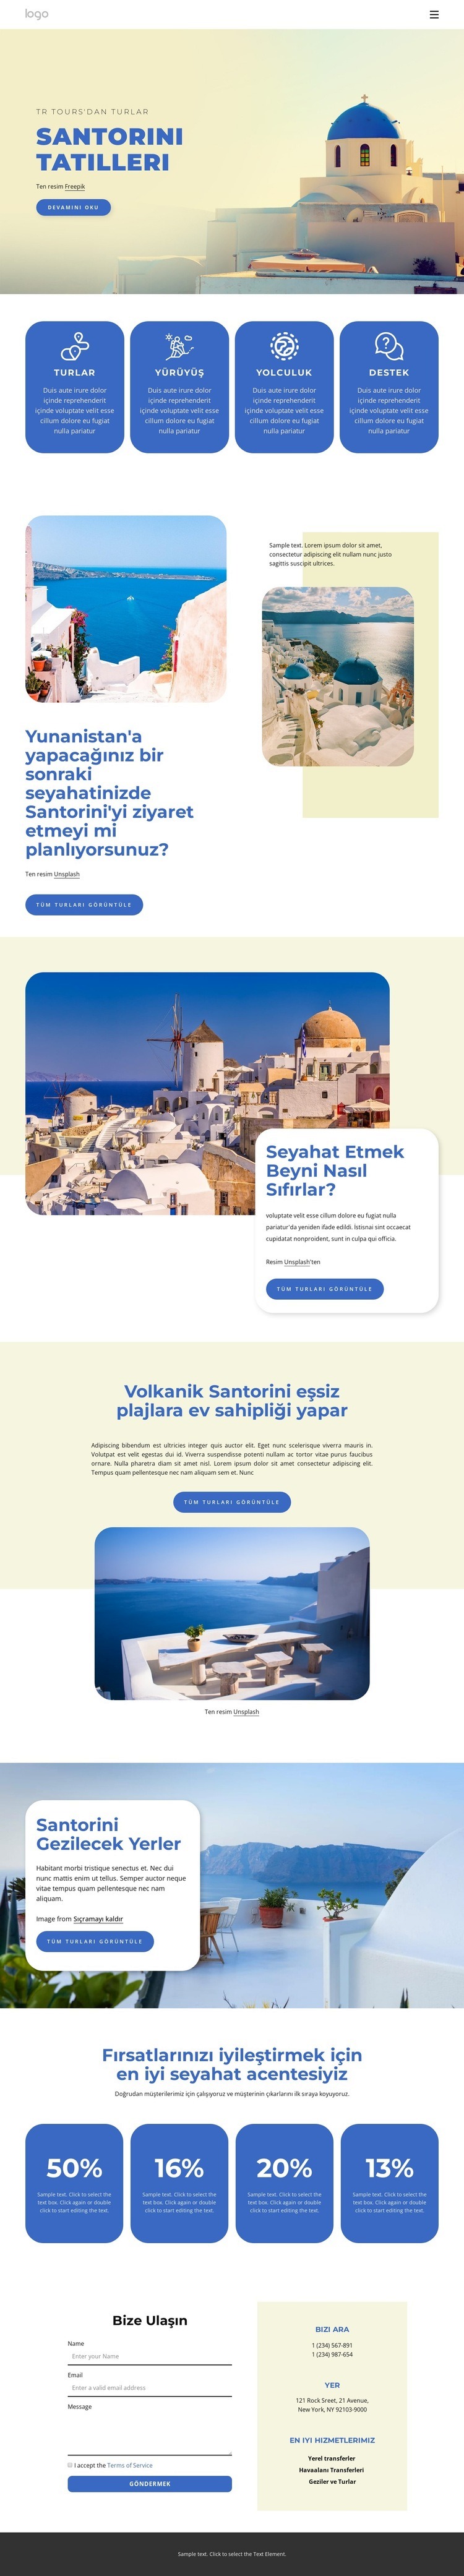 Santorini'deki Tatiller Web sitesi tasarımı